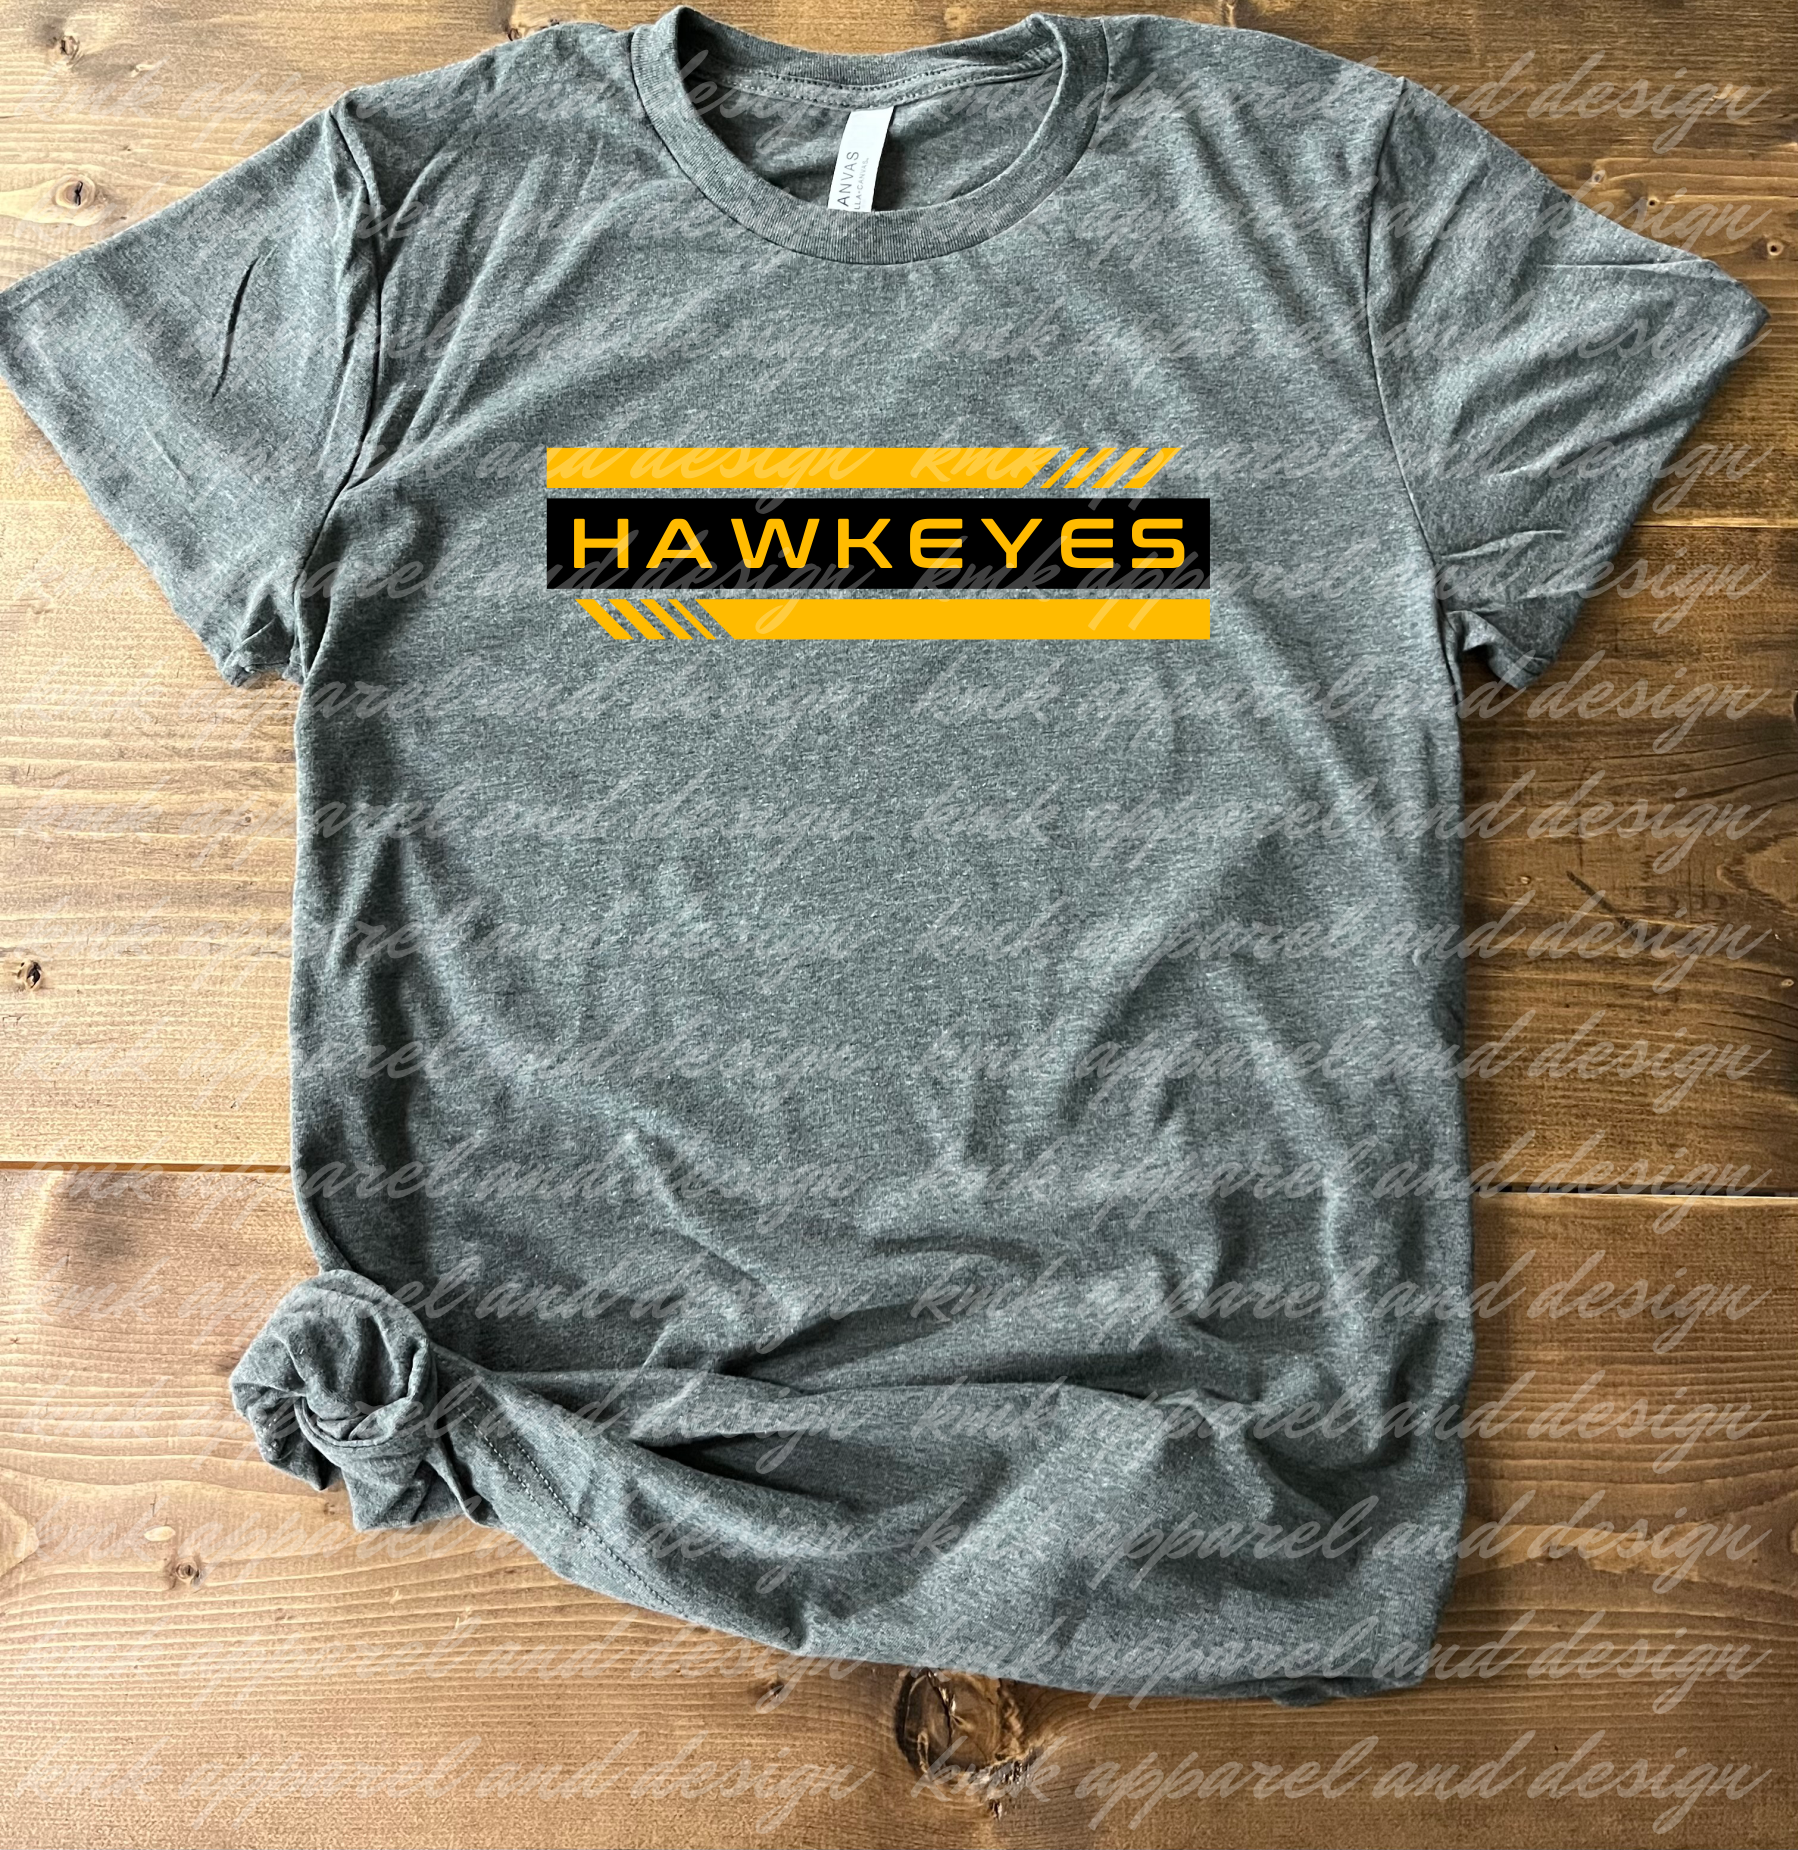 Hawkeyes Stripes (+ options)